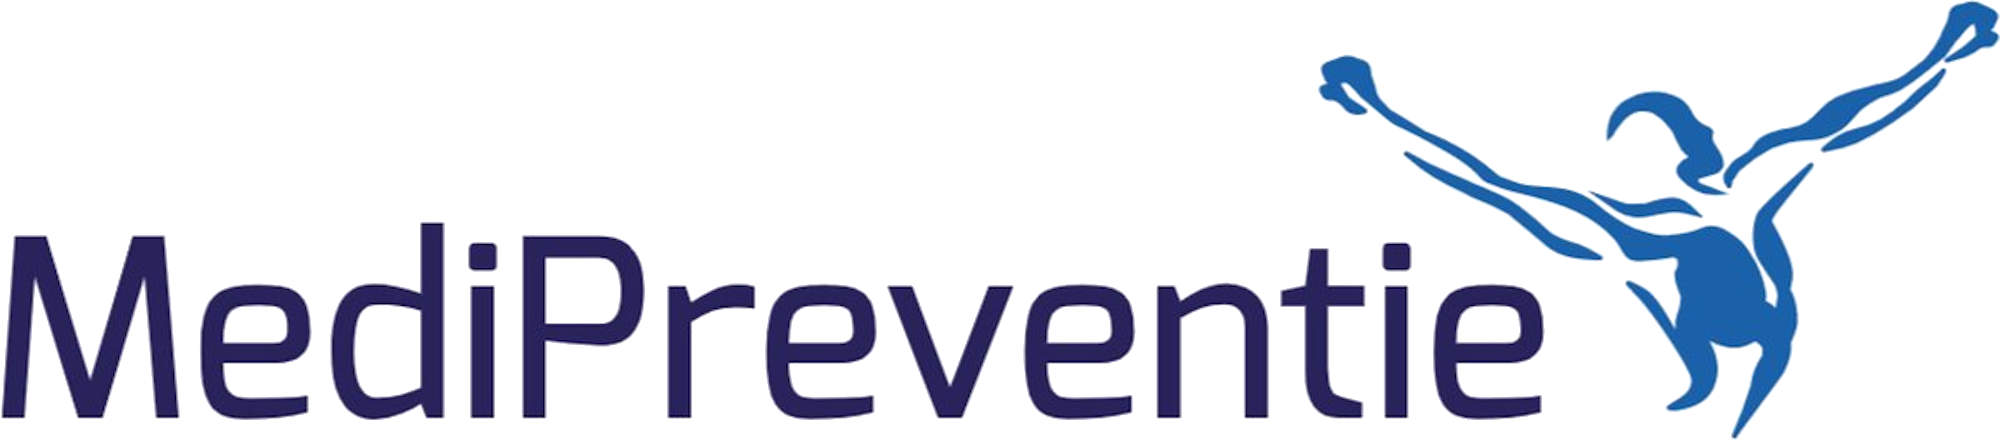 Logo Medipreventi